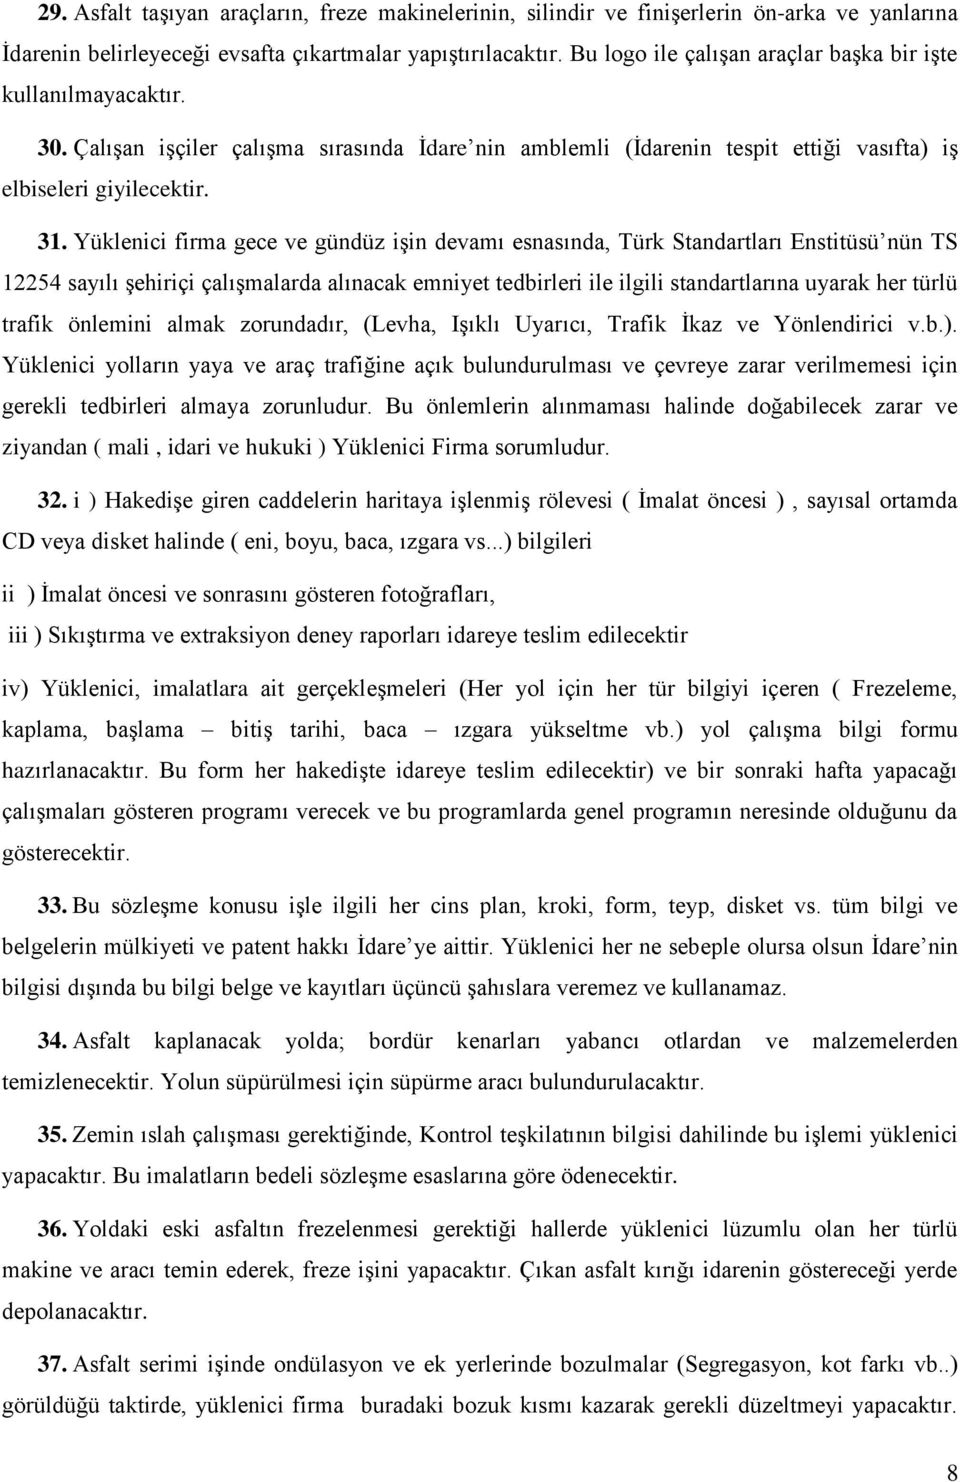 Yüklenici firma gece ve gündüz işin devamı esnasında, Türk Standartları Enstitüsü nün TS 12254 sayılı şehiriçi çalışmalarda alınacak emniyet tedbirleri ile ilgili standartlarına uyarak her türlü